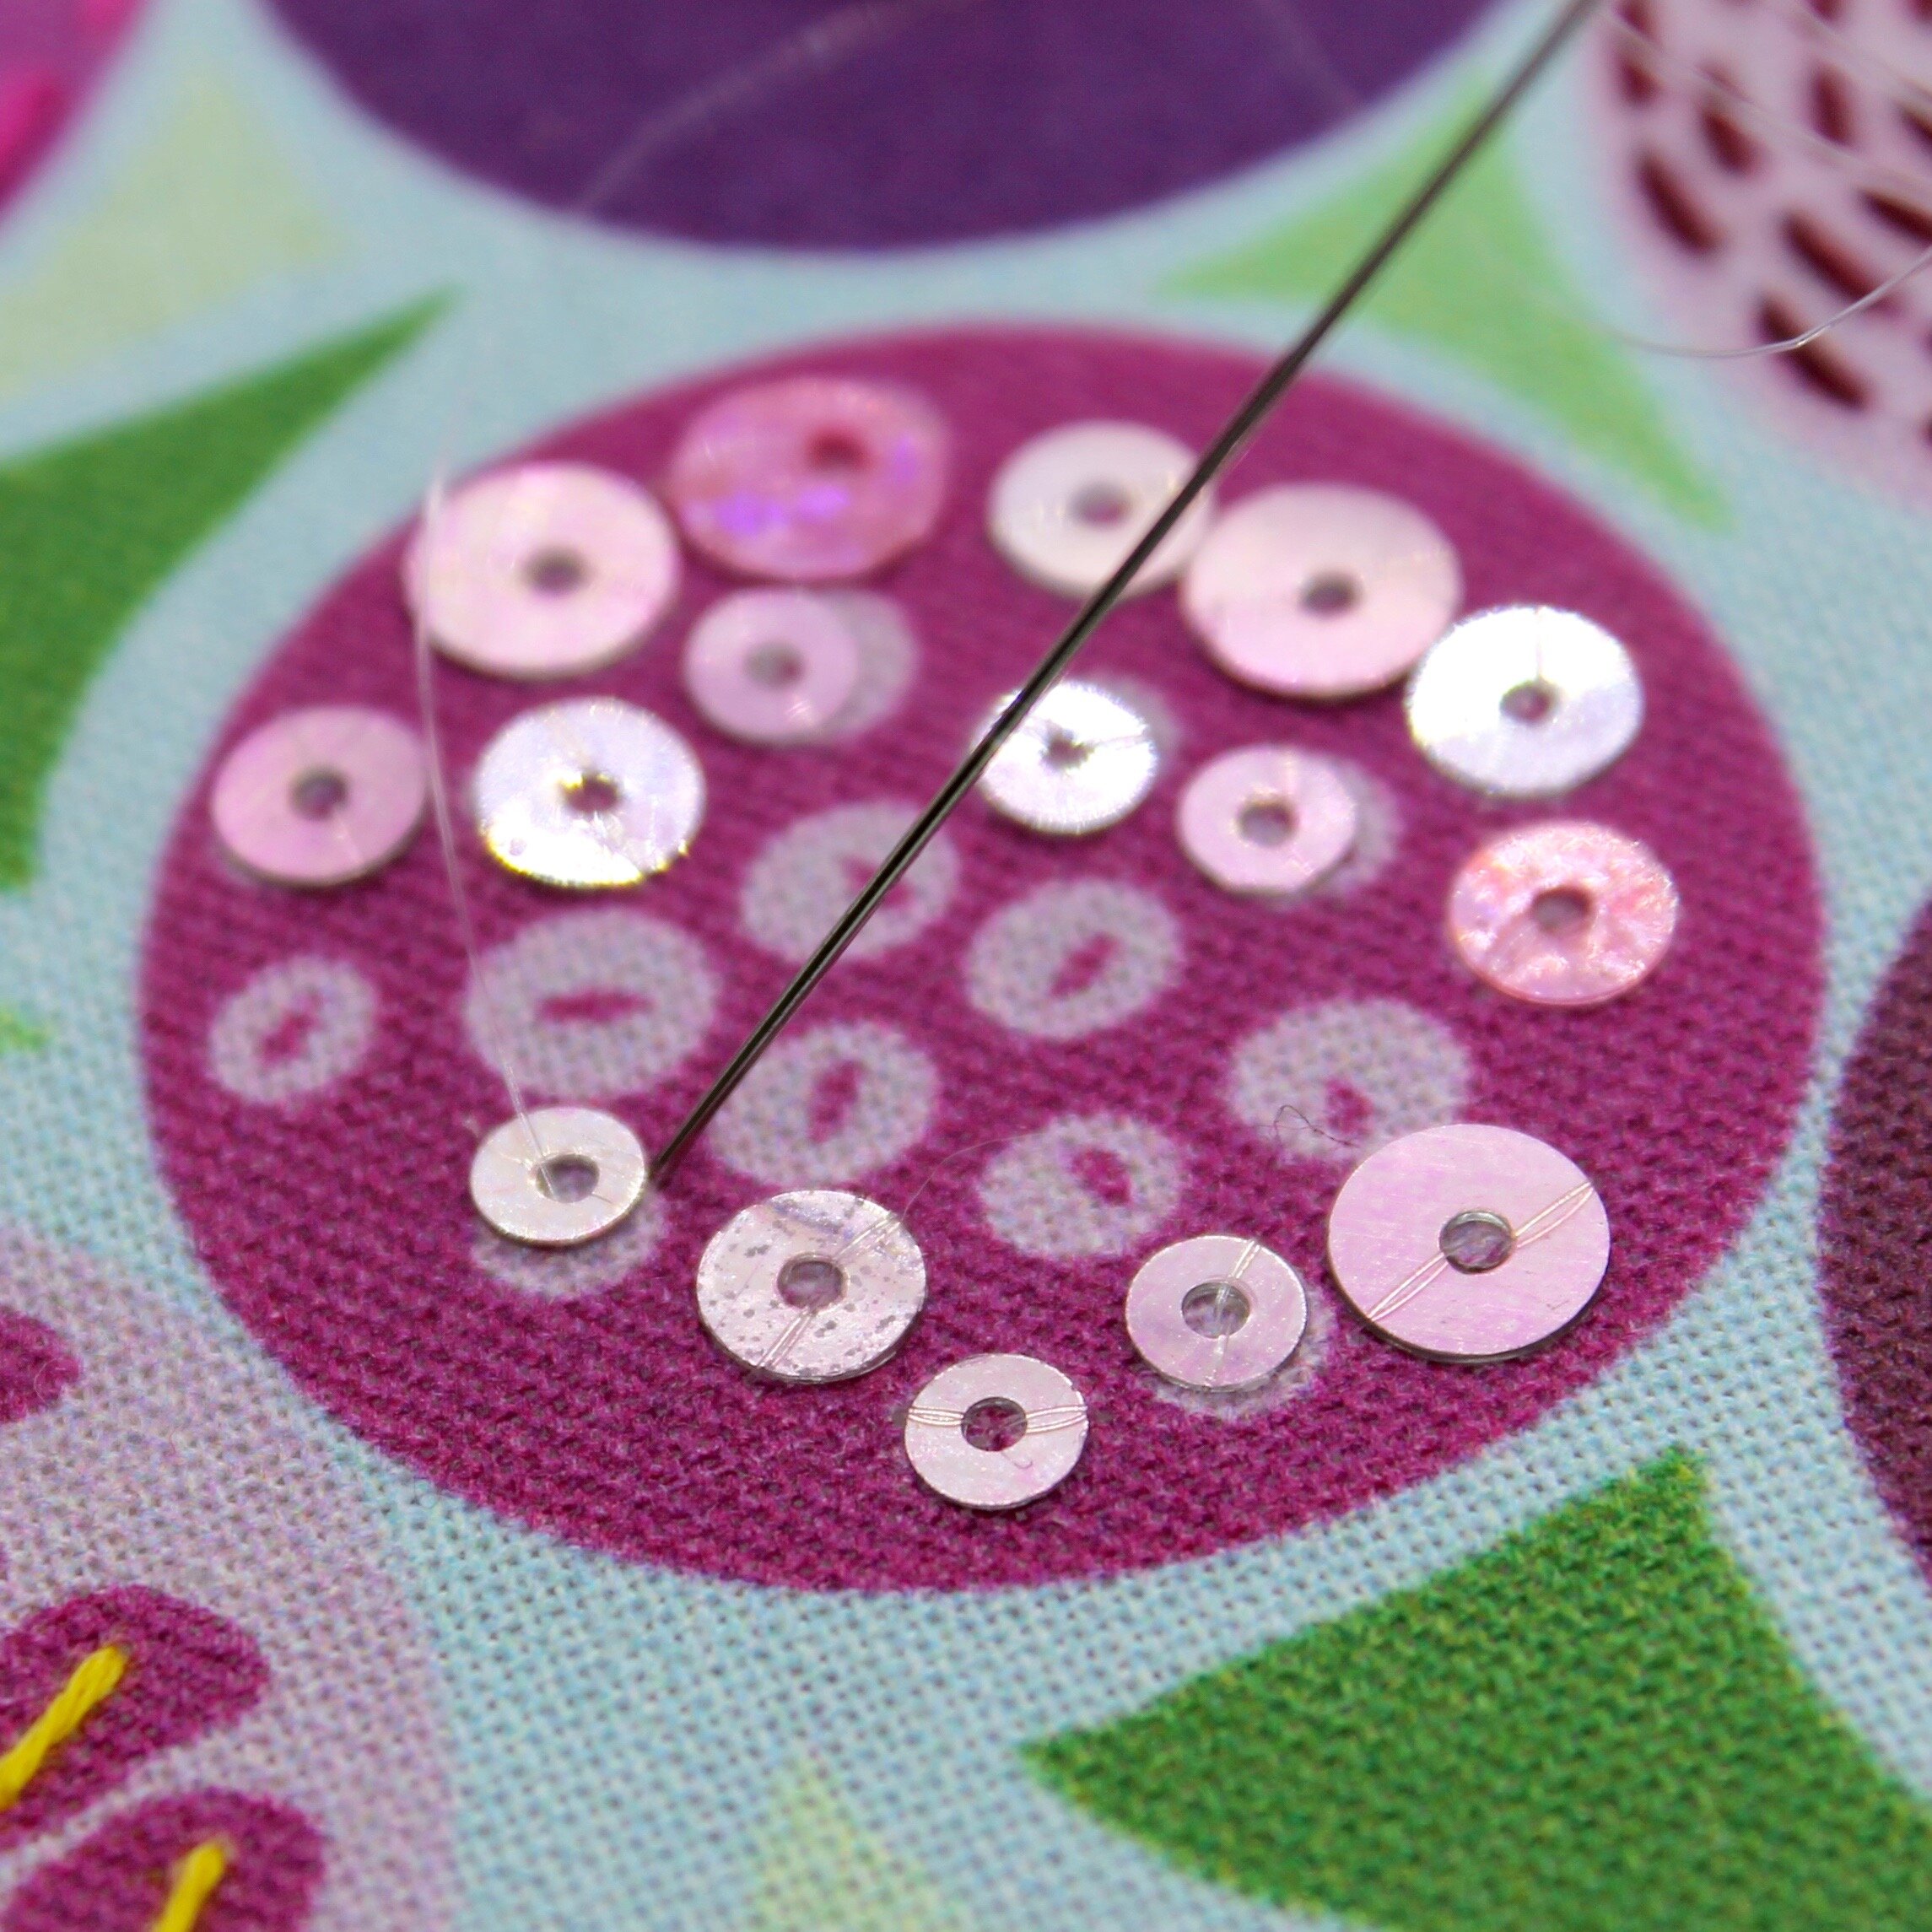 Floral Embellished Stitch Sampler Embroidery Kit — Embellished Elephant